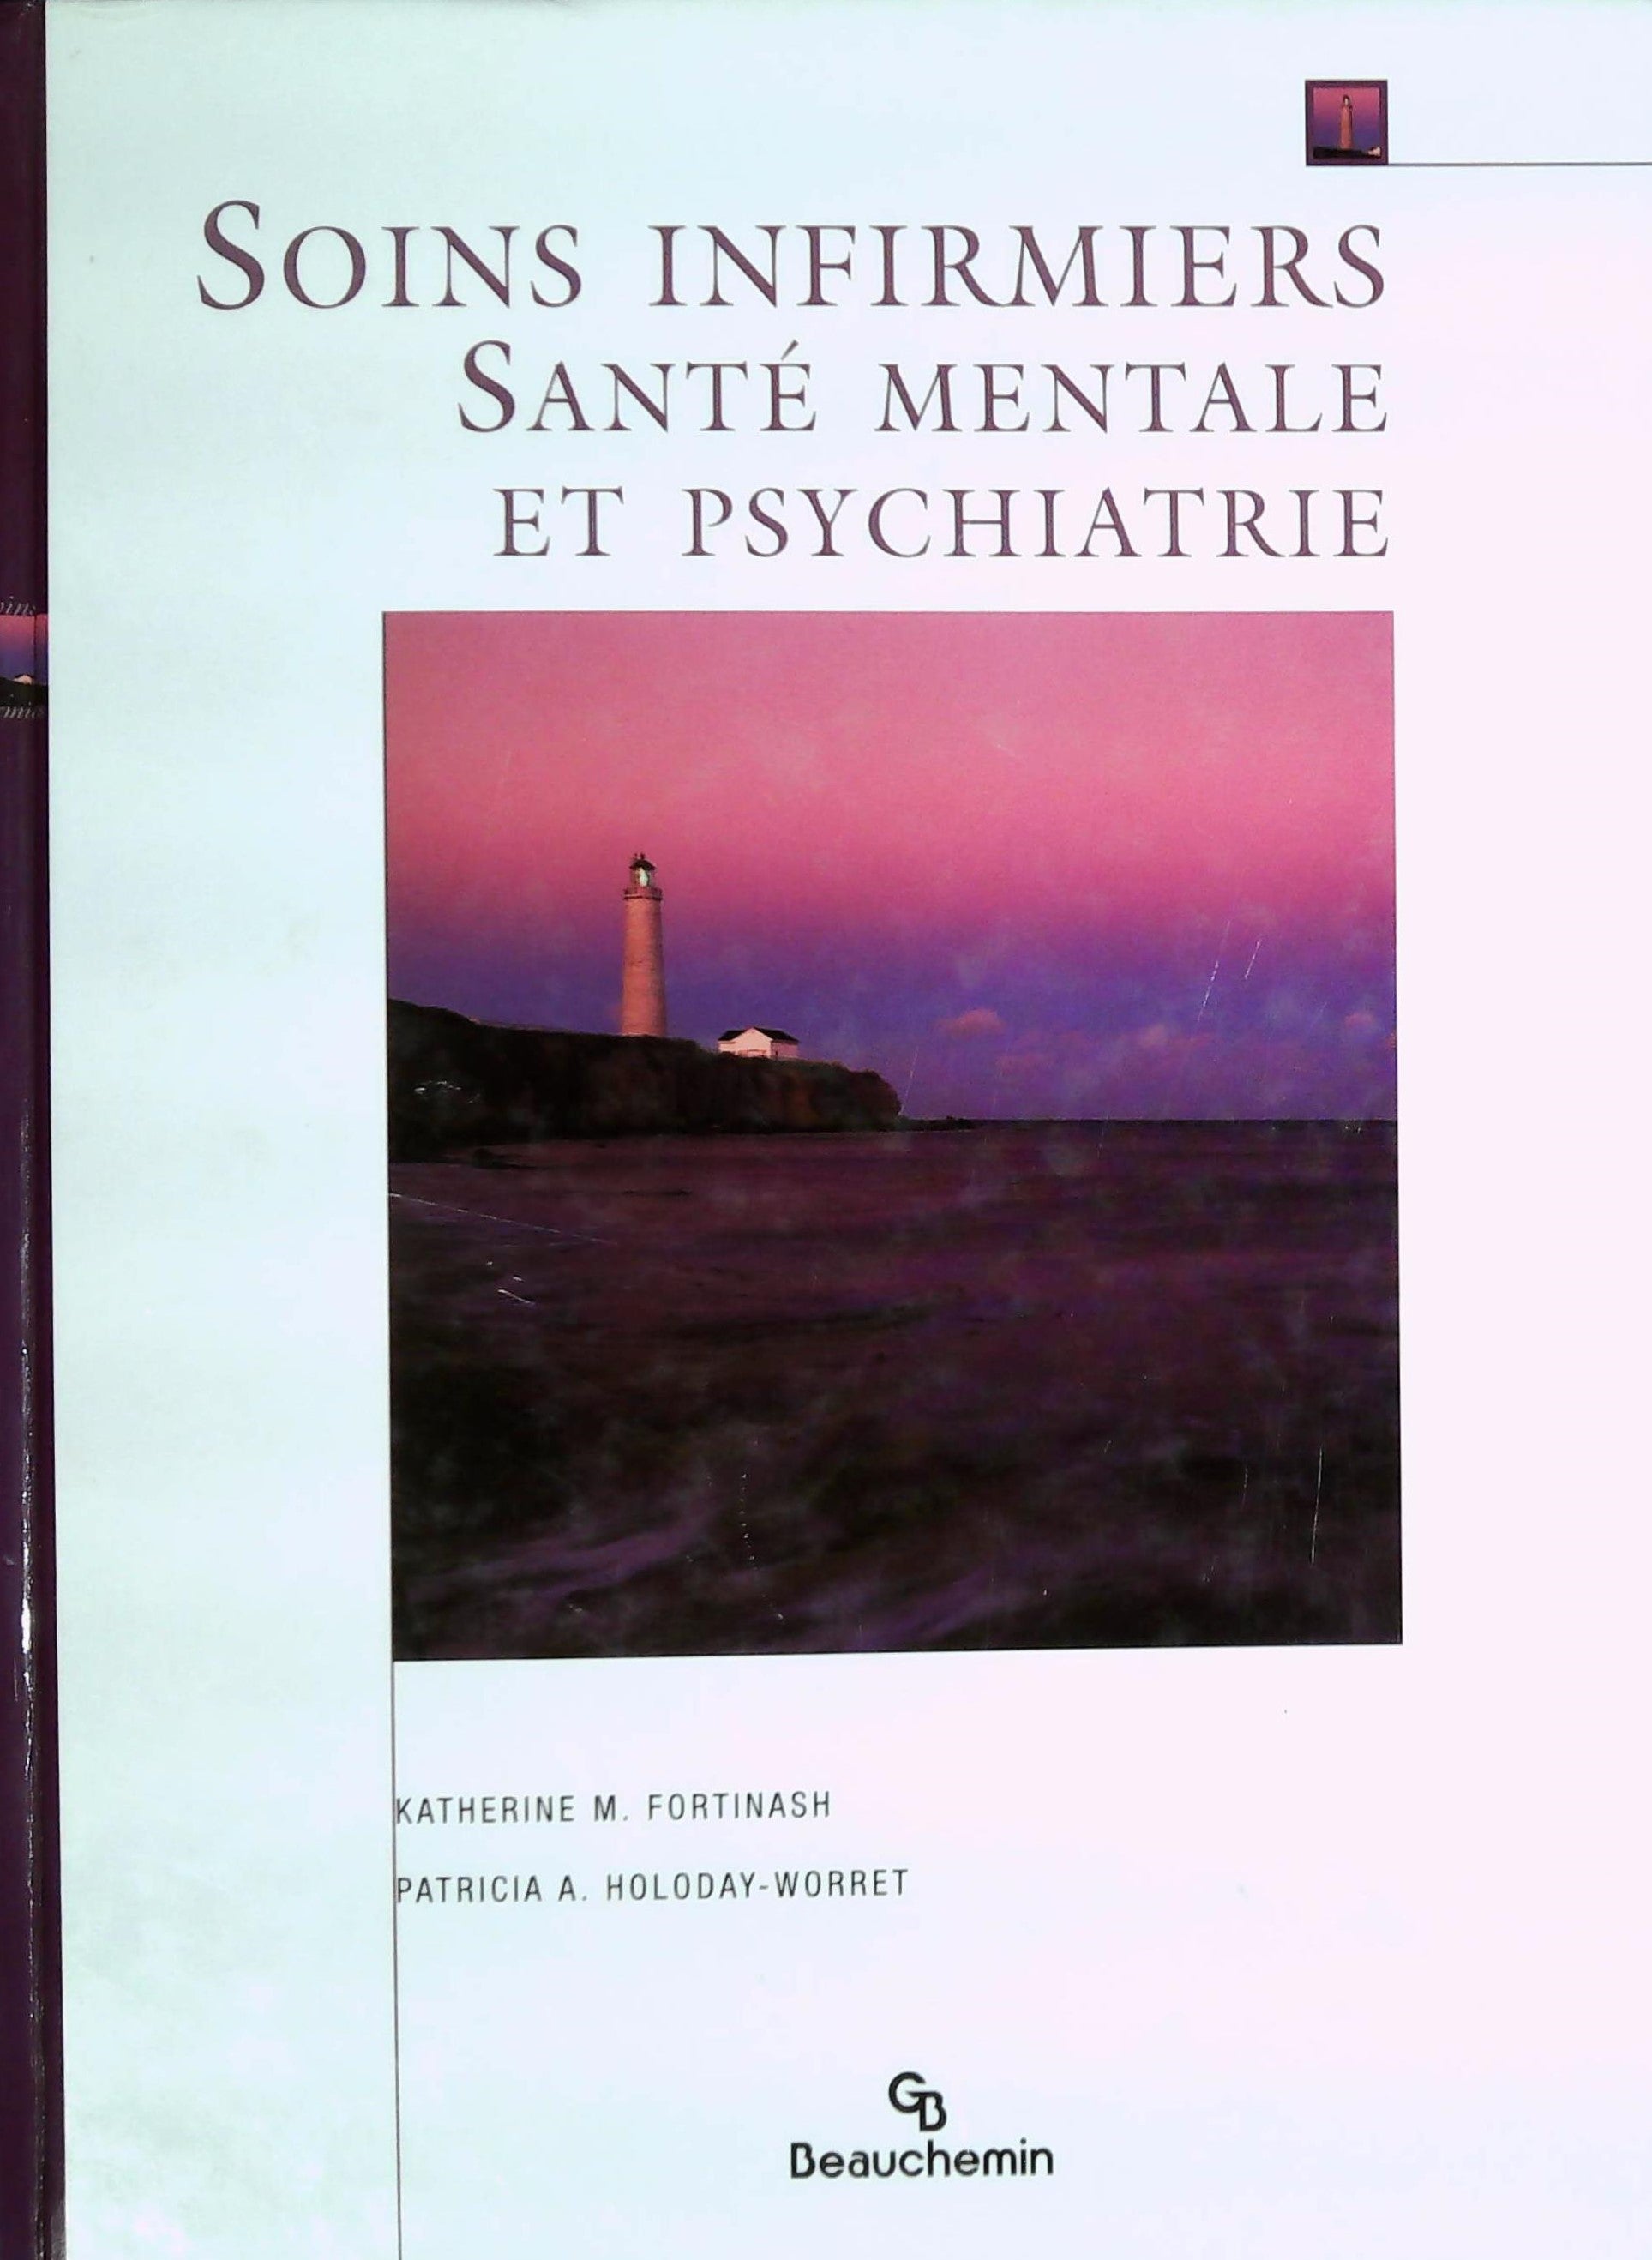 Livre ISBN 2761617703 Sois infirmiers, santé mentale et psychiatrie (Katherine M. Fortinash)